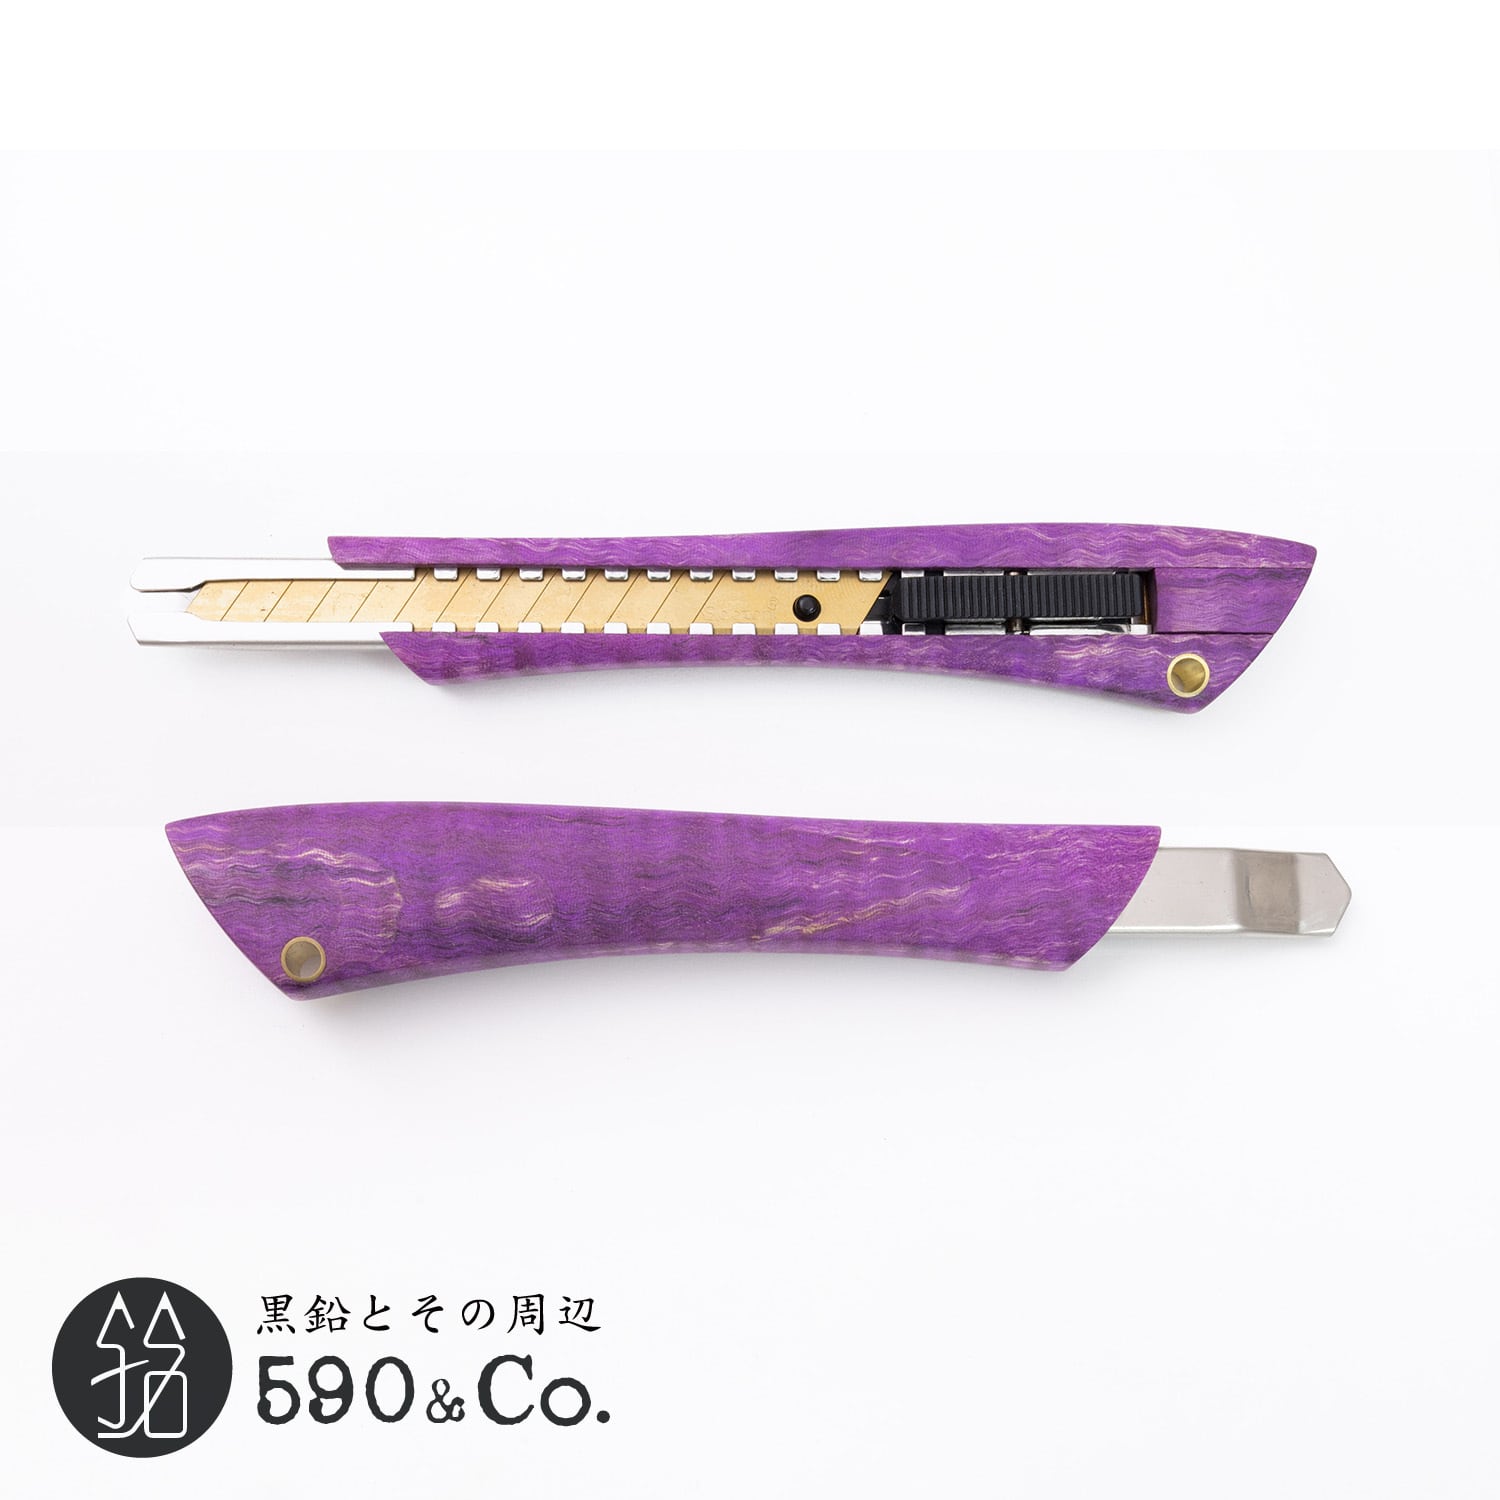 【Flamberg/フランベルク】木製カッターナイフS型 (スタビライズド